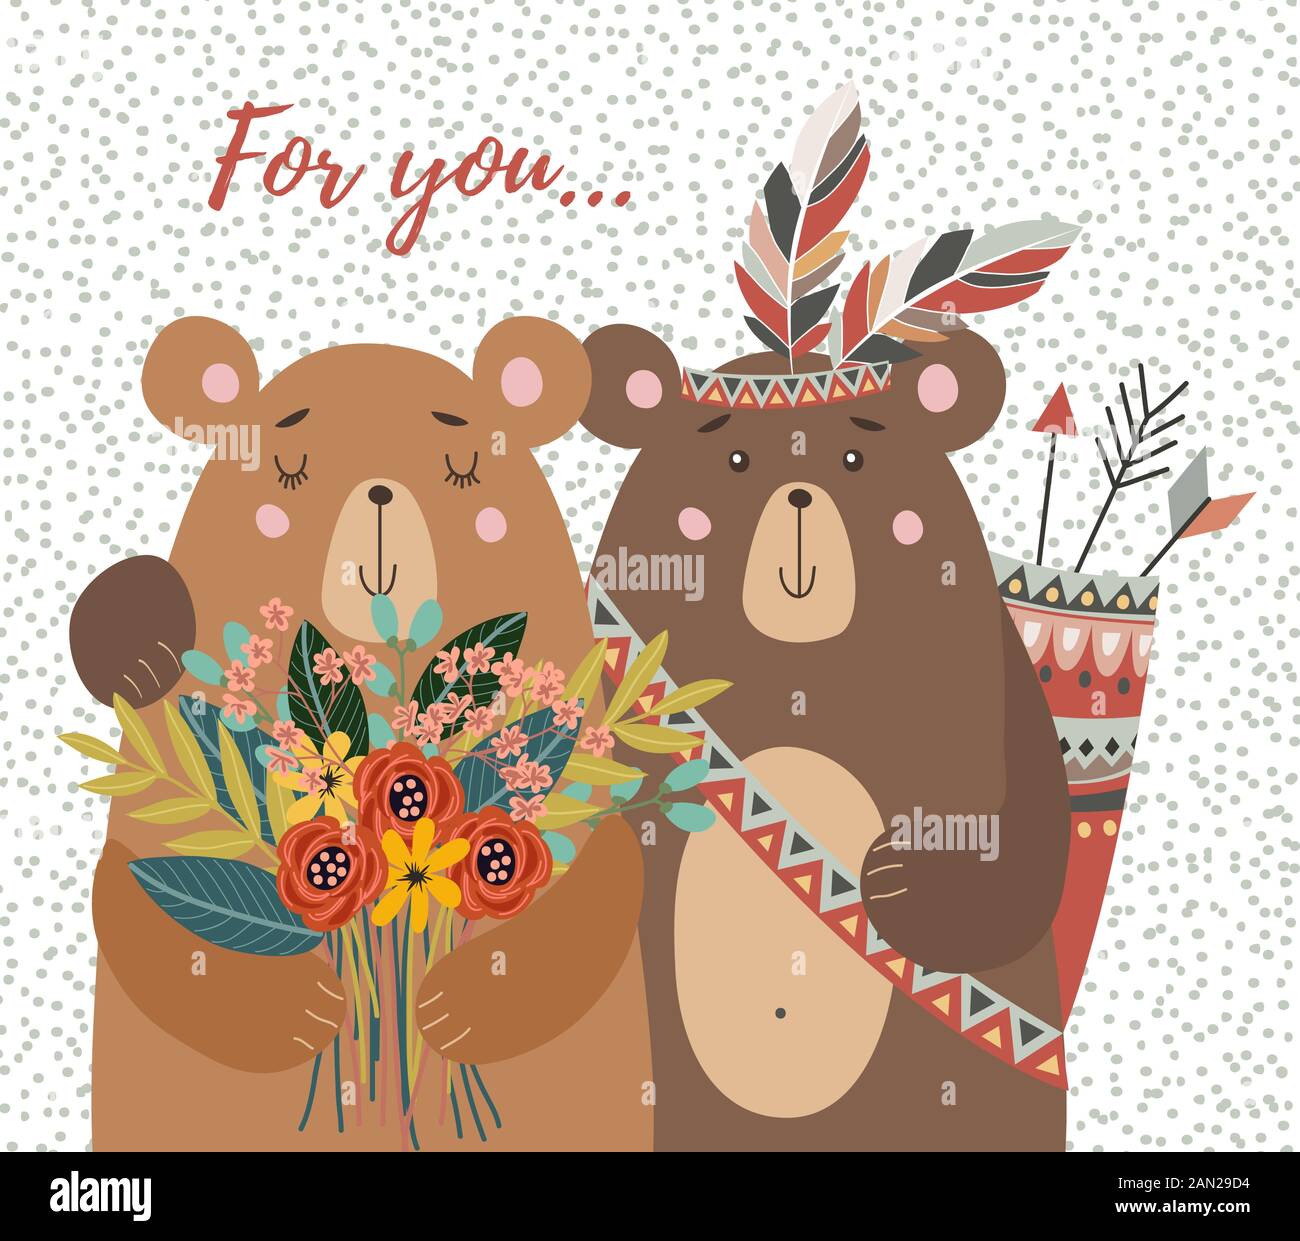 Handgezeichnete, niedliche zwei Bären mit Blumenstrauß und Stammesfedern für Dekorationskarten oder Poster. Kindliche Vektorgrafiken Stock Vektor